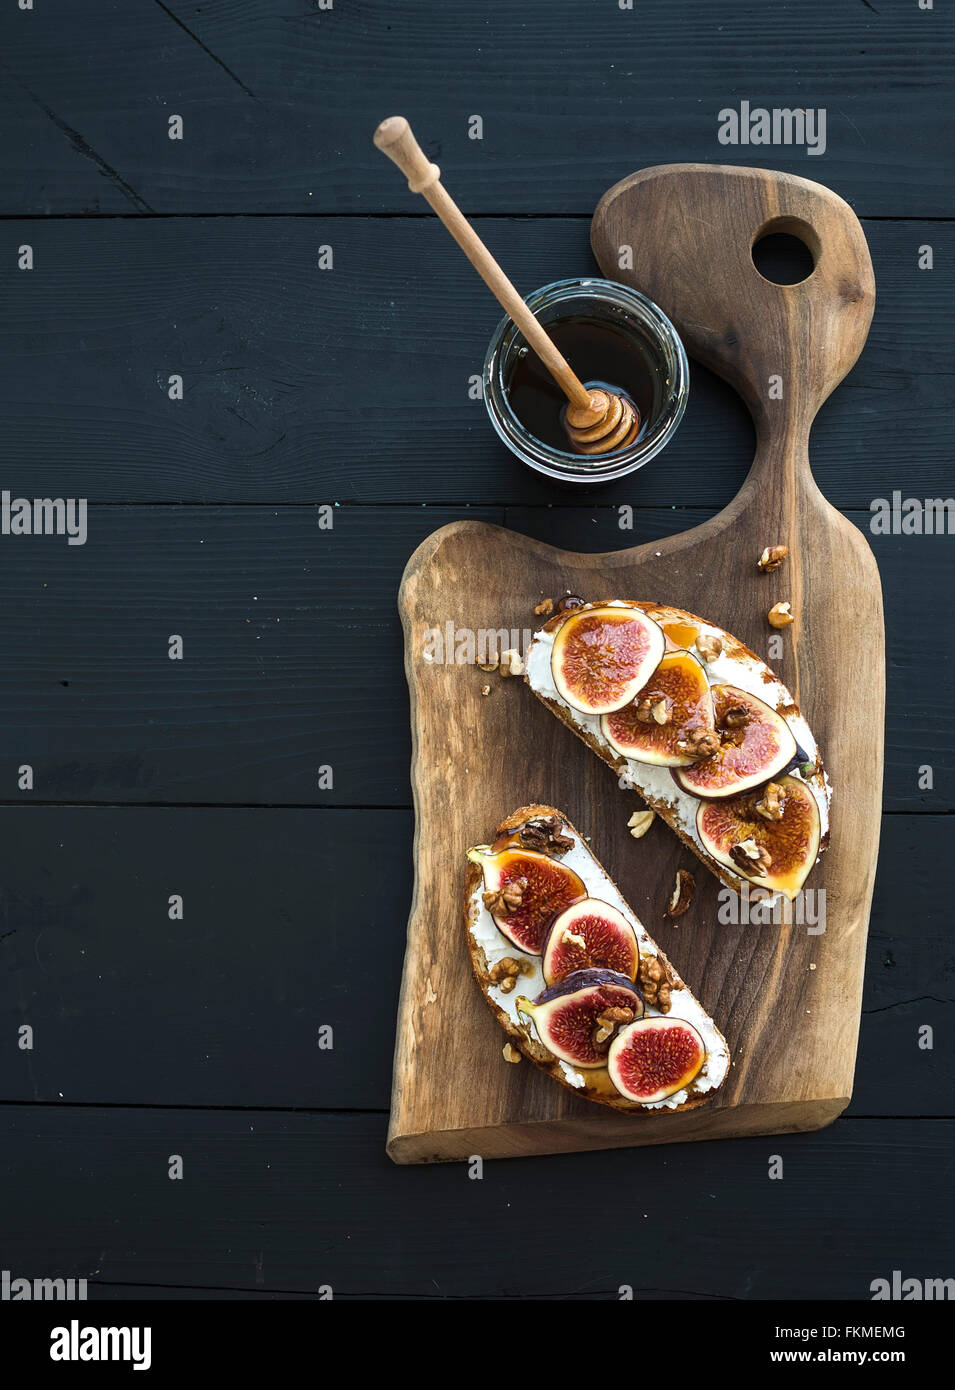 Sándwiches con ricota, higos frescos, nueces y miel sobre placa de madera rústica sobre fondo negro, vista superior Foto de stock